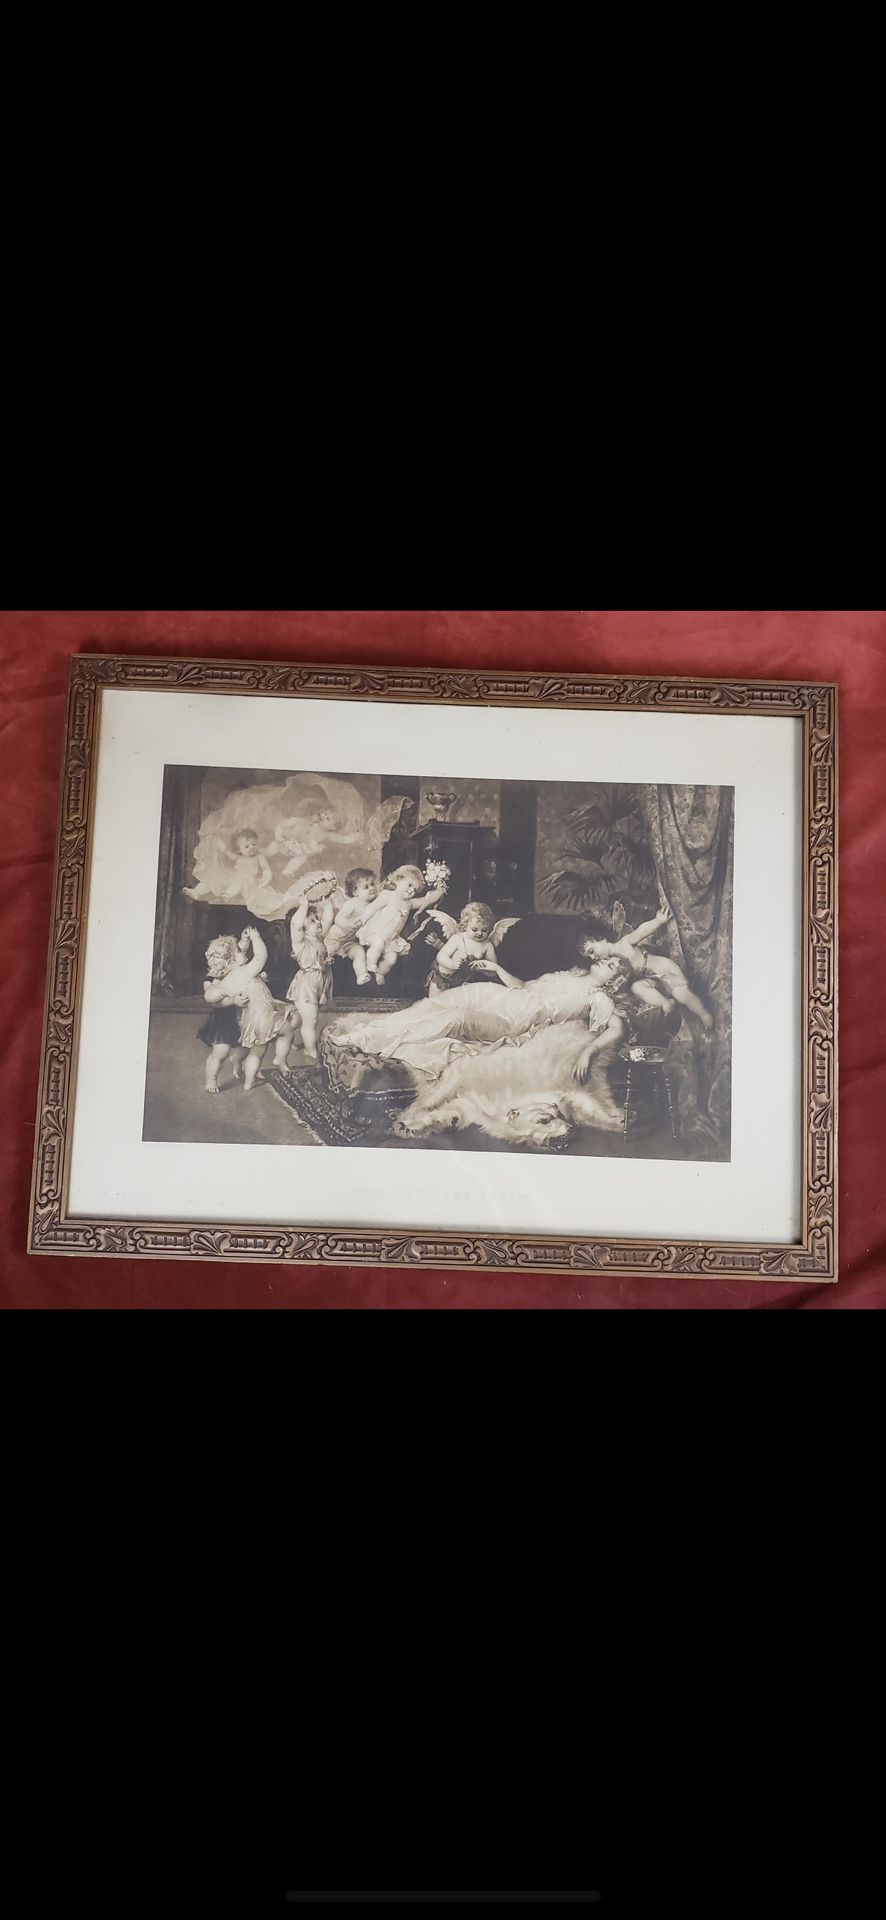 Antique framed Franz lefler sepia lithograph marriage wedding dream 18x24